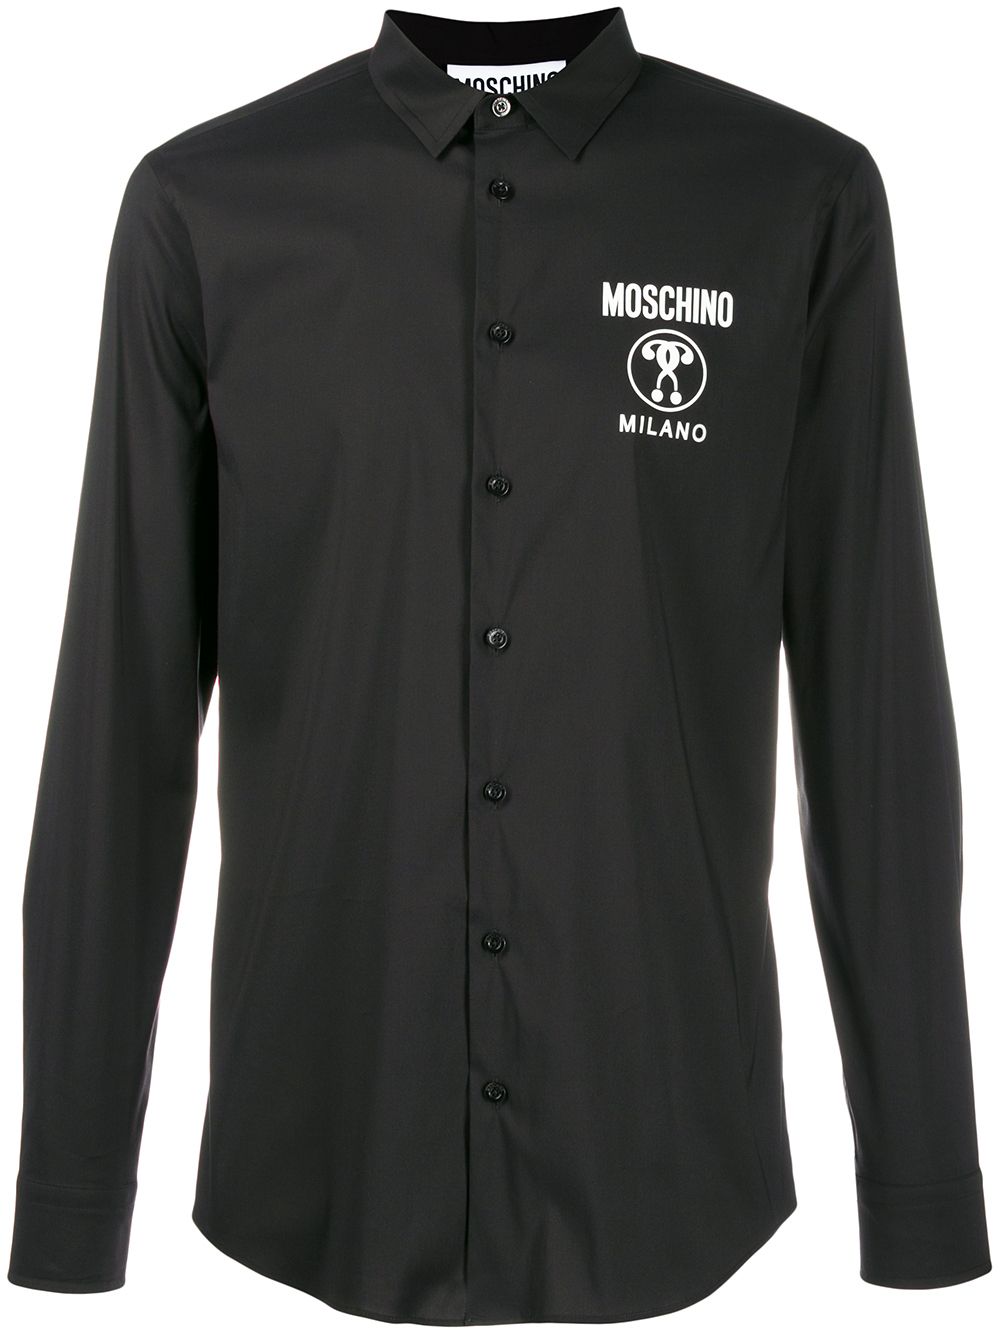 фото Moschino рубашка с контрастным логотипом